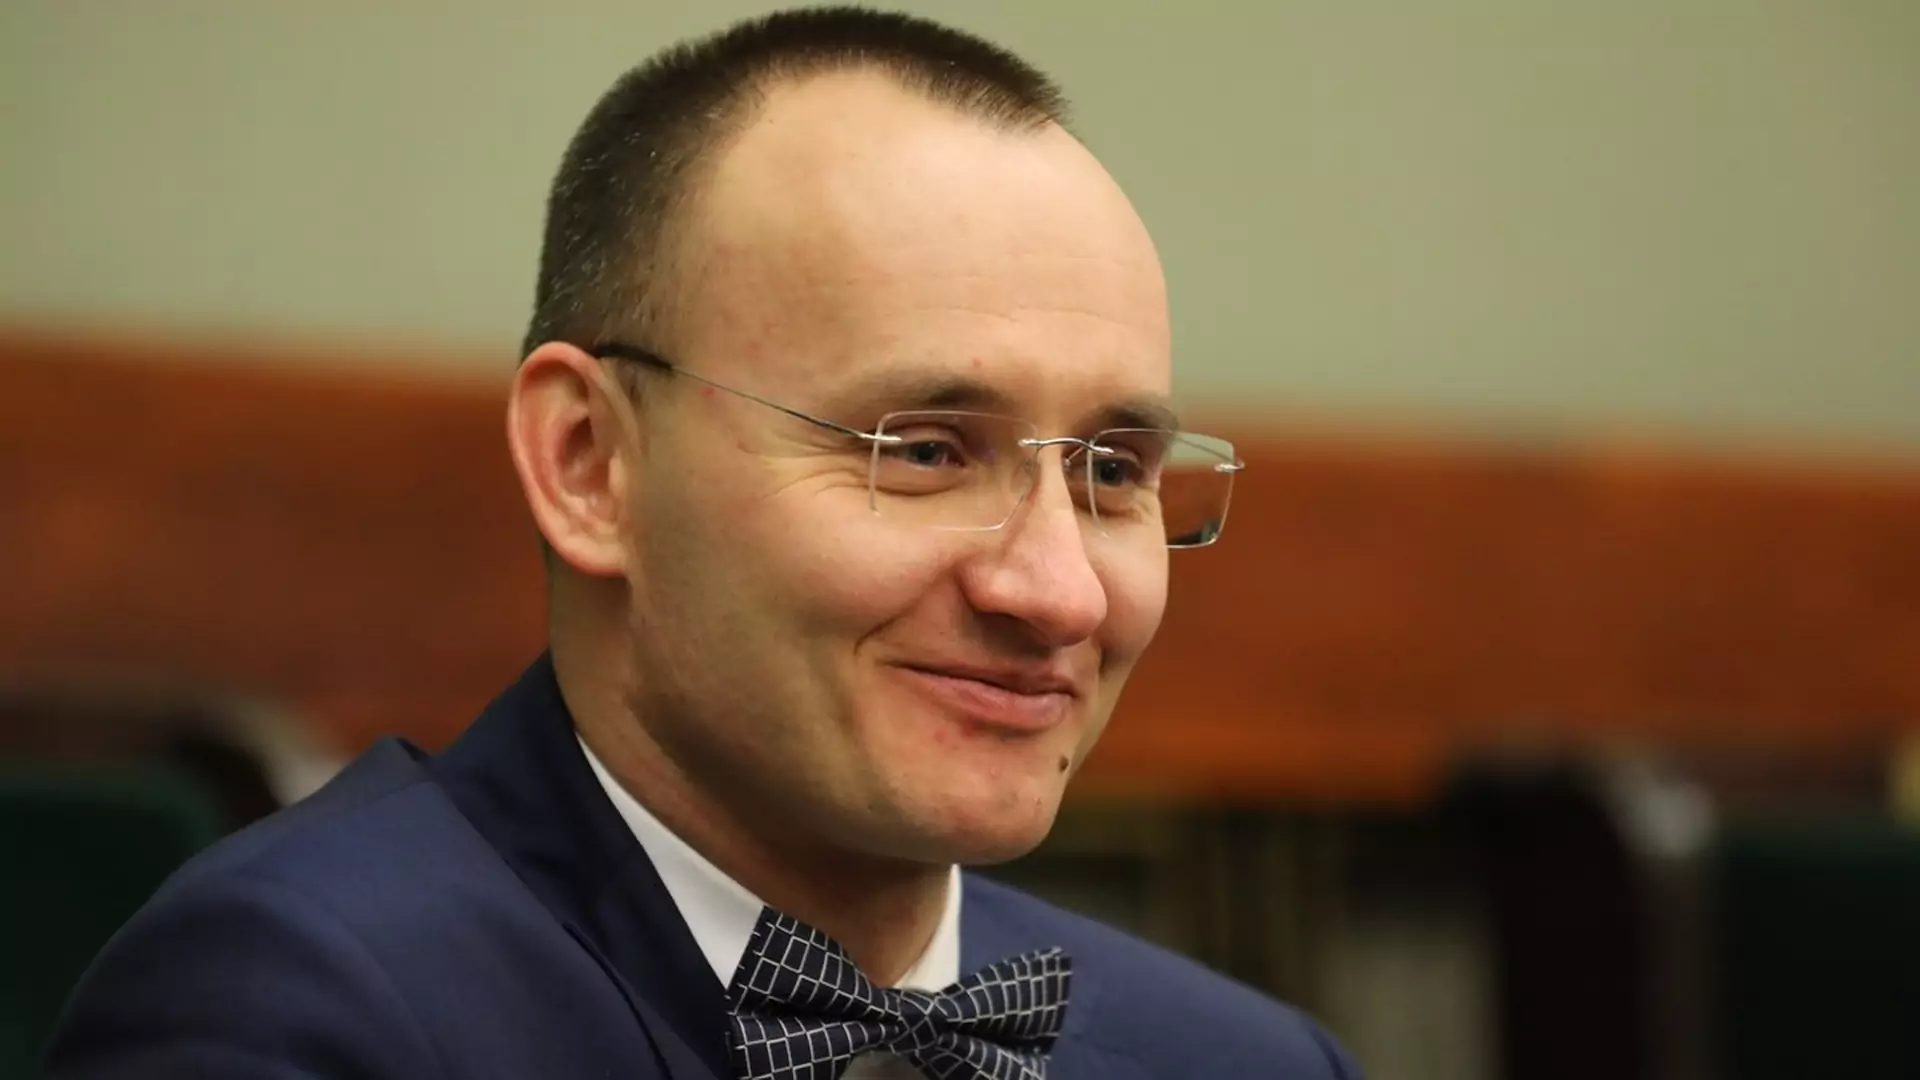 Sejm wybrał Rzecznika Praw Dziecka. Opozycja zarzuca mu brak kompetencji